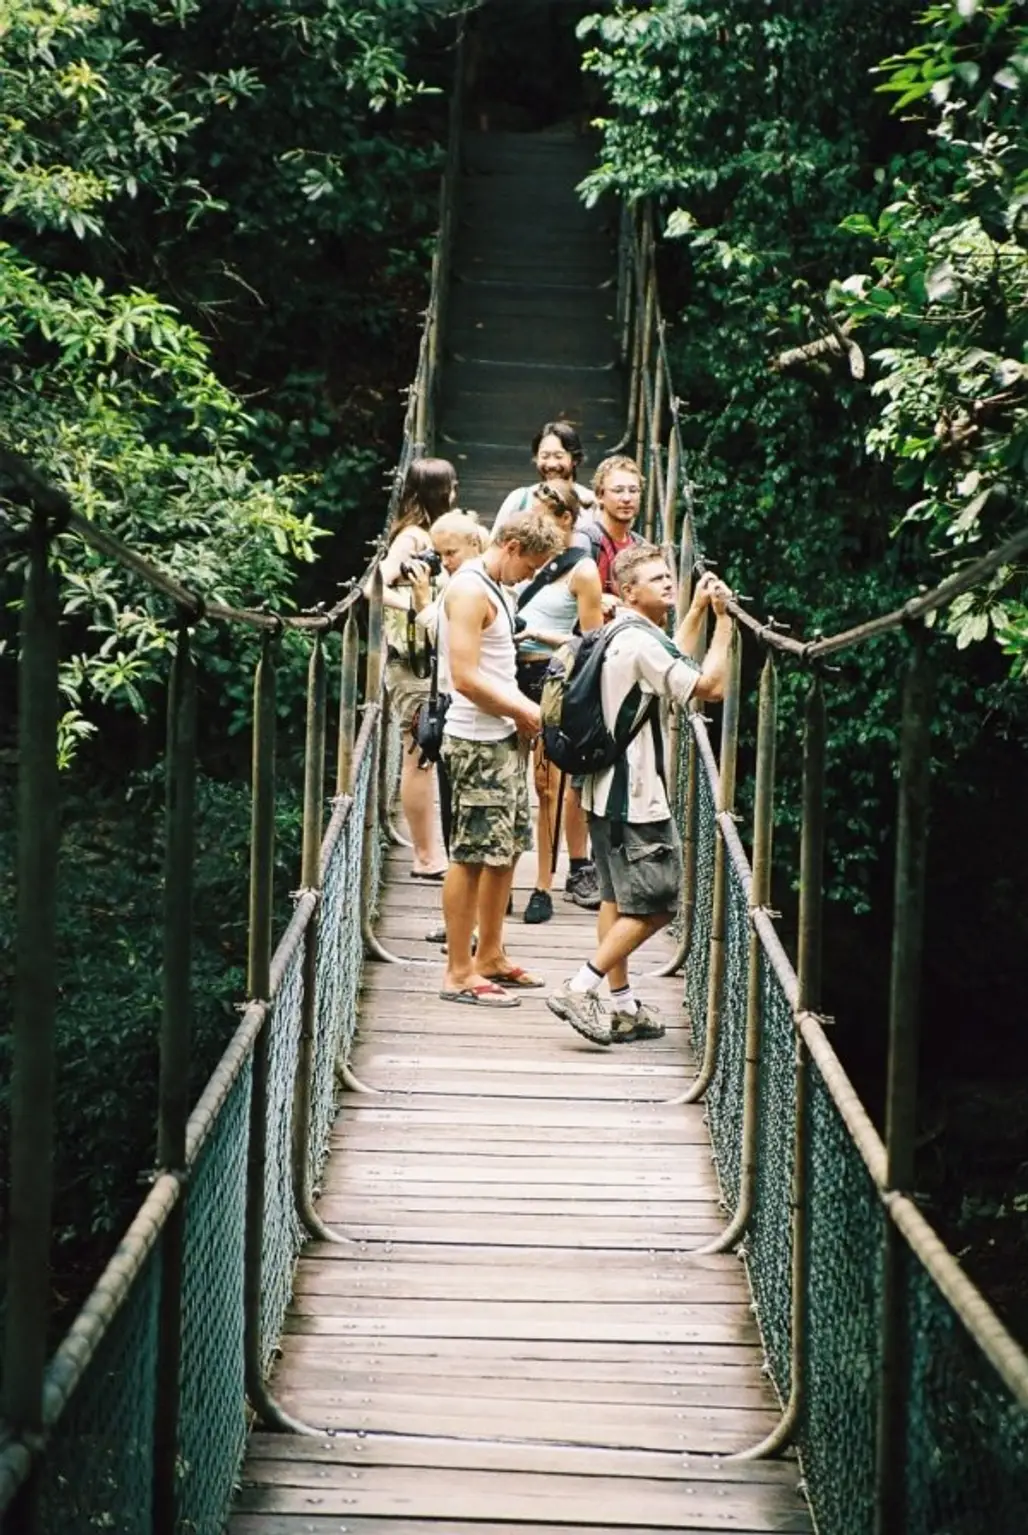 Go Hiking through a Tropical Rainforest